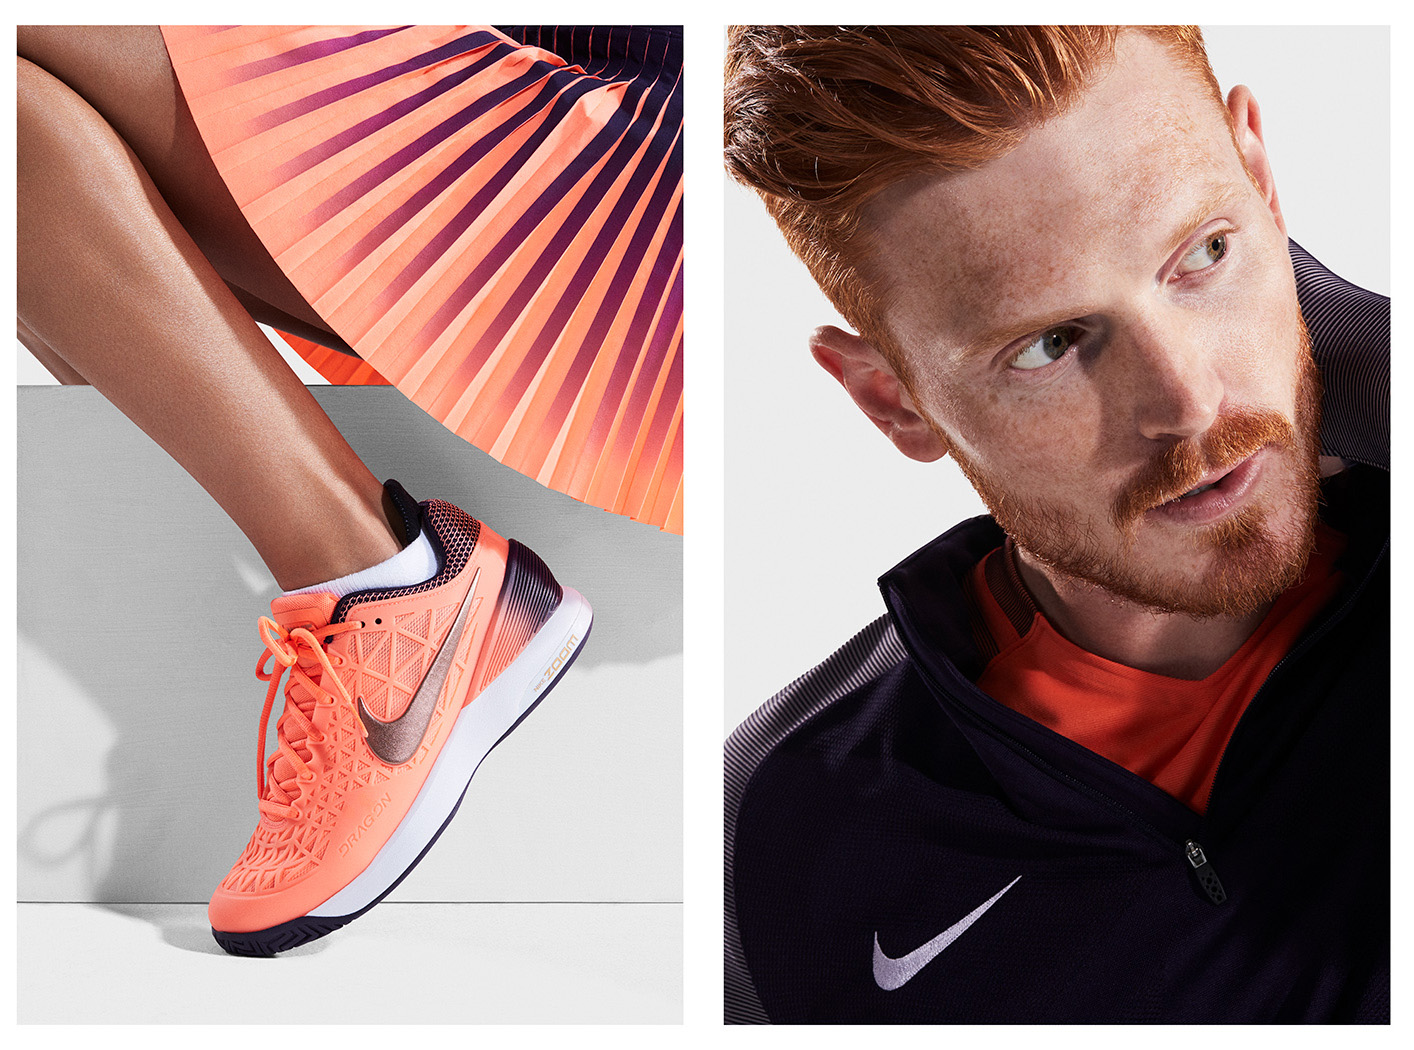 Koto Bolofo | Nike | 9